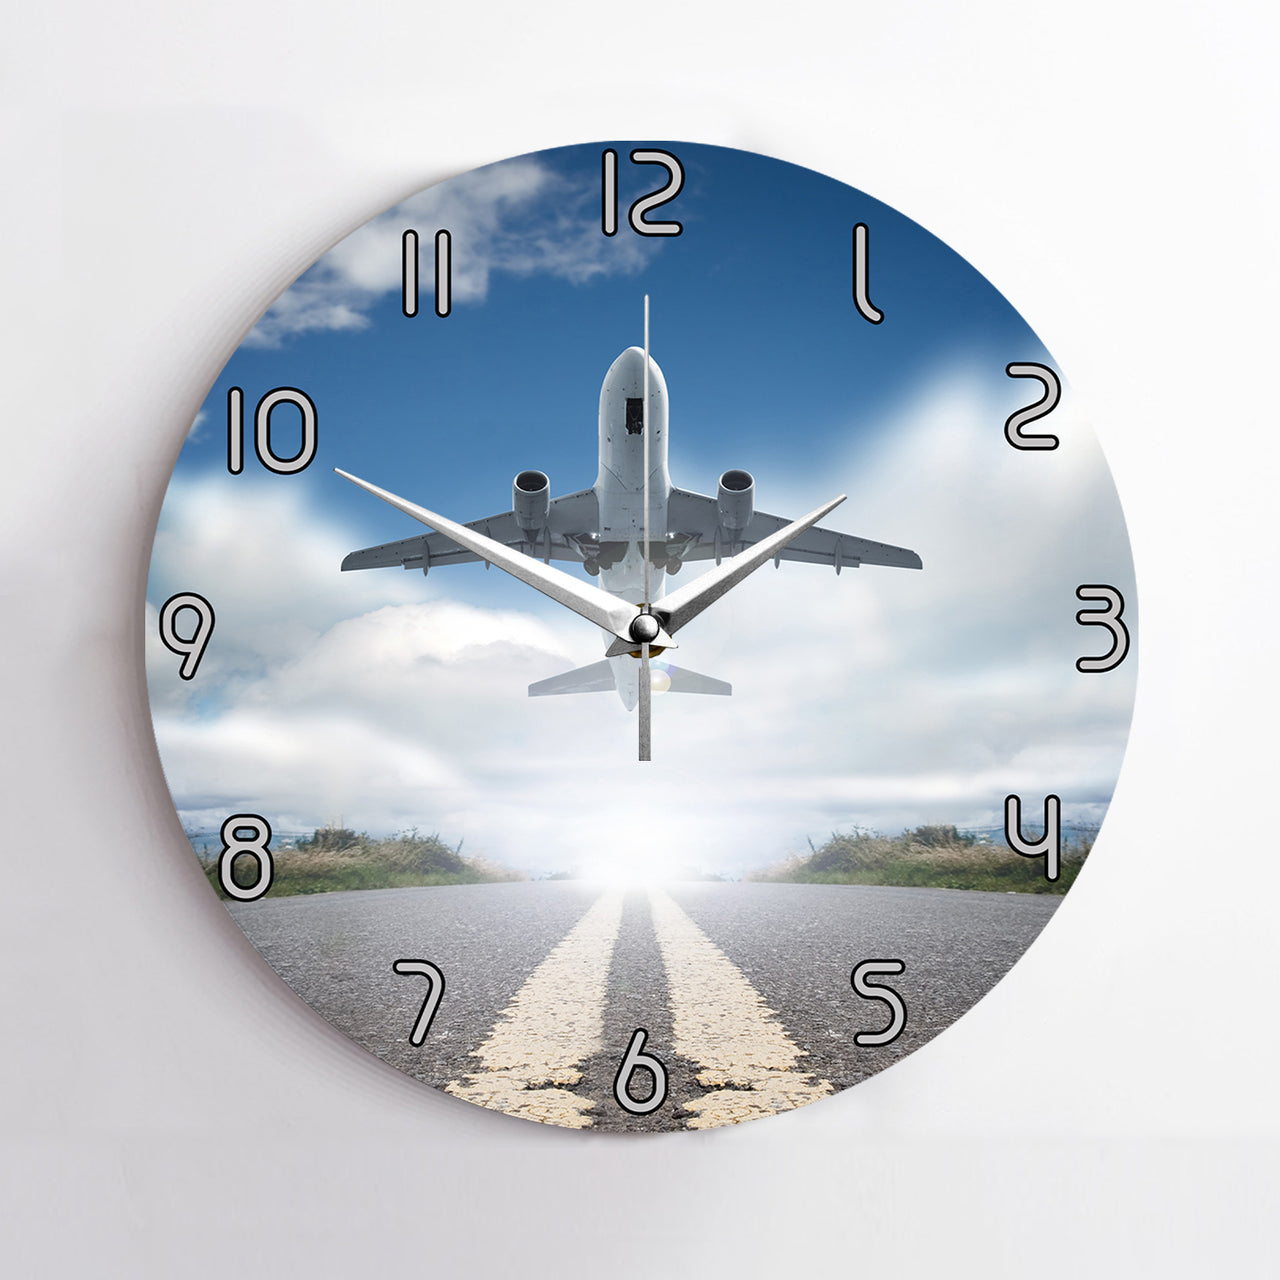 Taking Off Aircraft Printed Wall Clocks